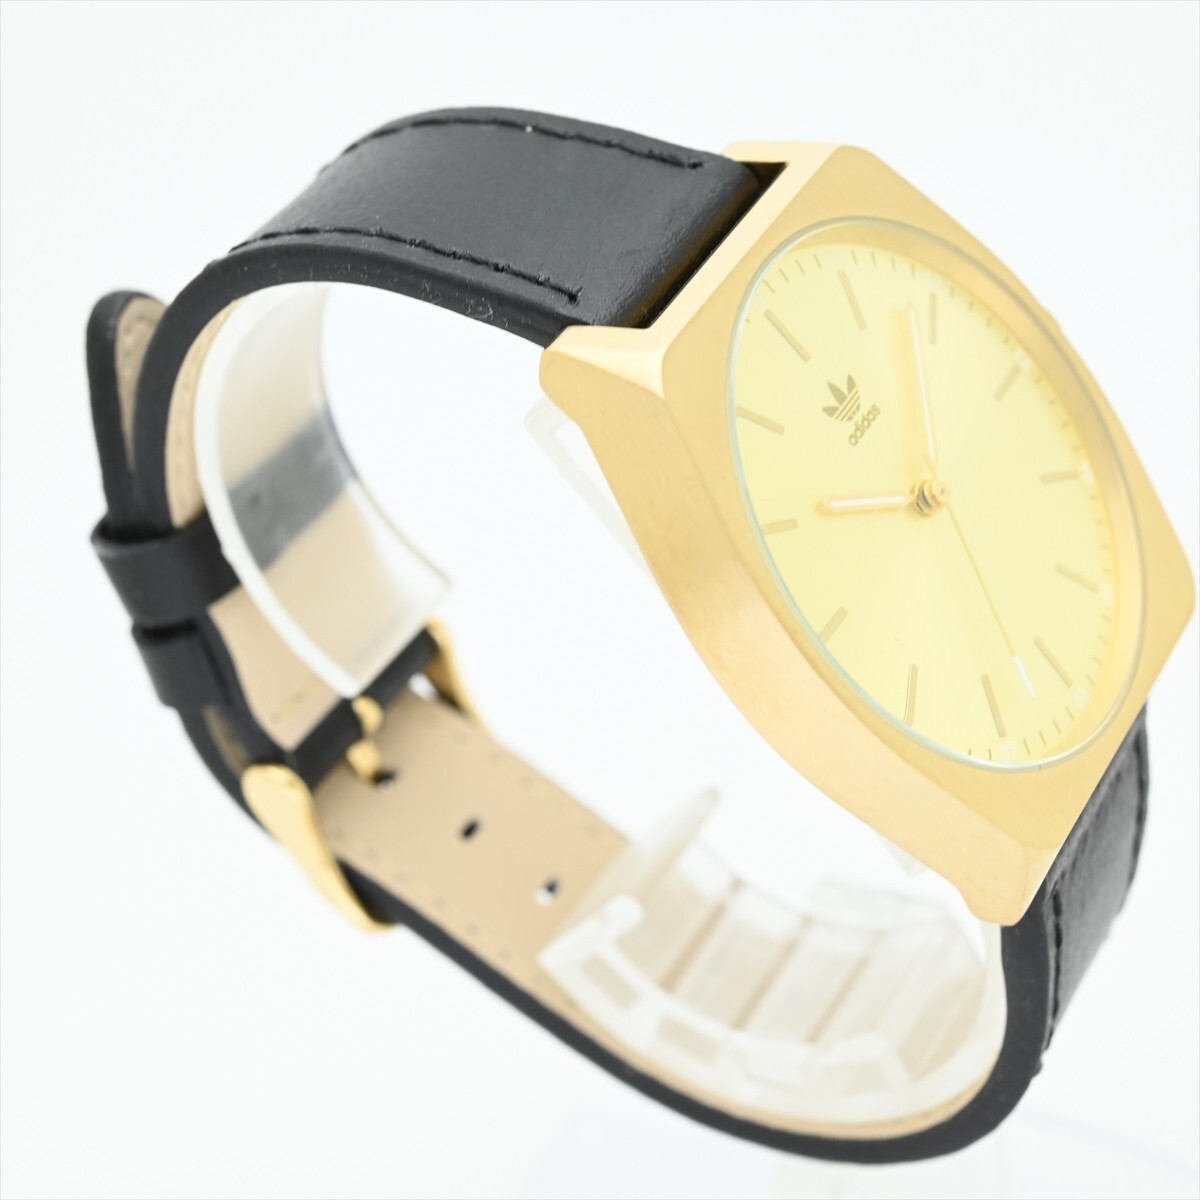  не использовался прекрасный товар Adidas /ADIDAS* кварц 100m водонепроницаемый батарейка заменен мужские наручные часы оригинальный натуральная кожа ремень Gold золотой цвет чёрный черный 